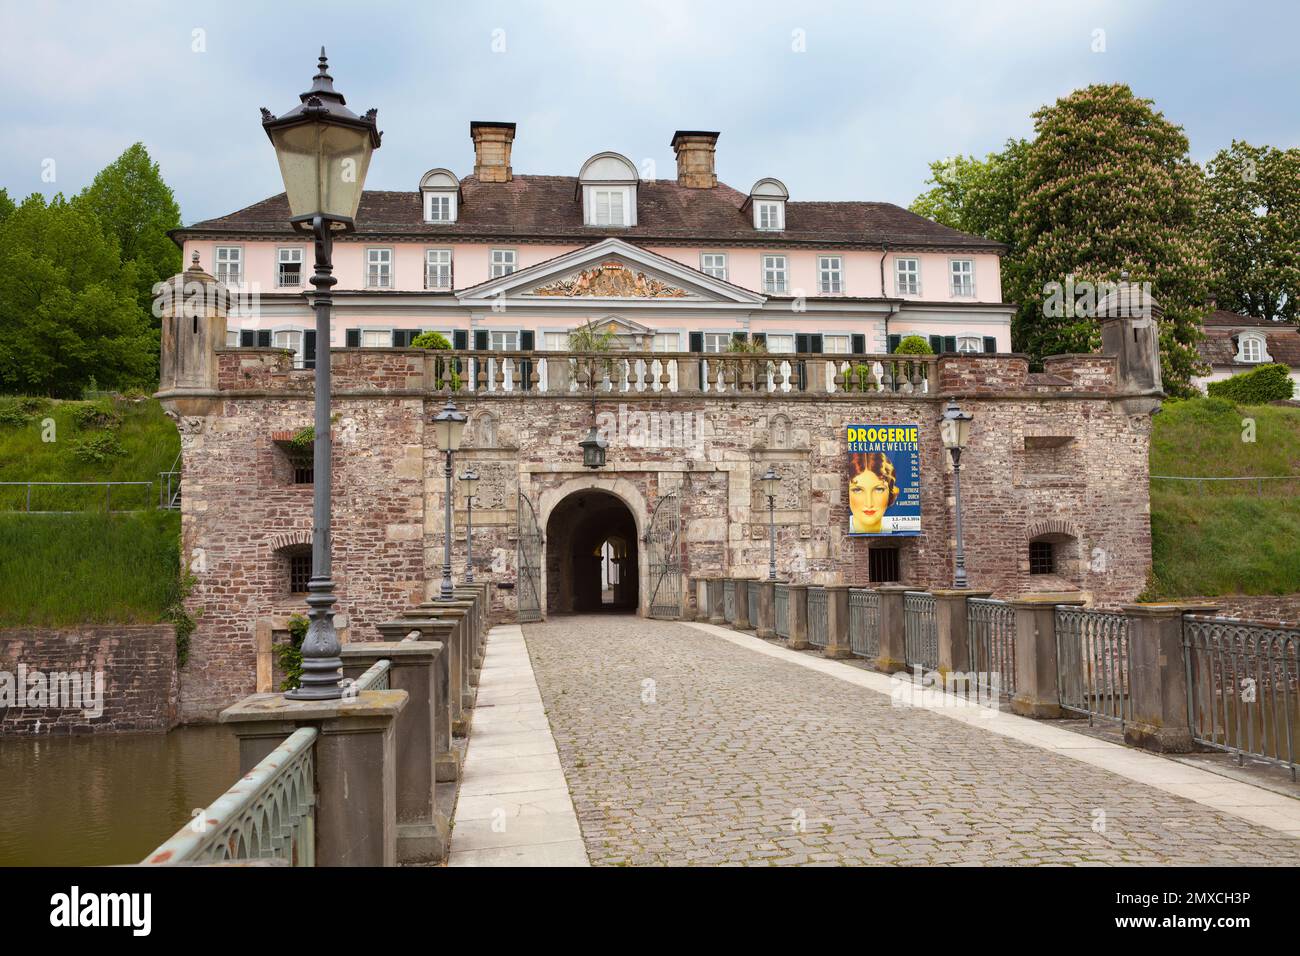 Il castello barocco, Bad Pyrmont, quartiere di Hamelin-Pyrmont, bassa Sassonia, Germania Foto Stock